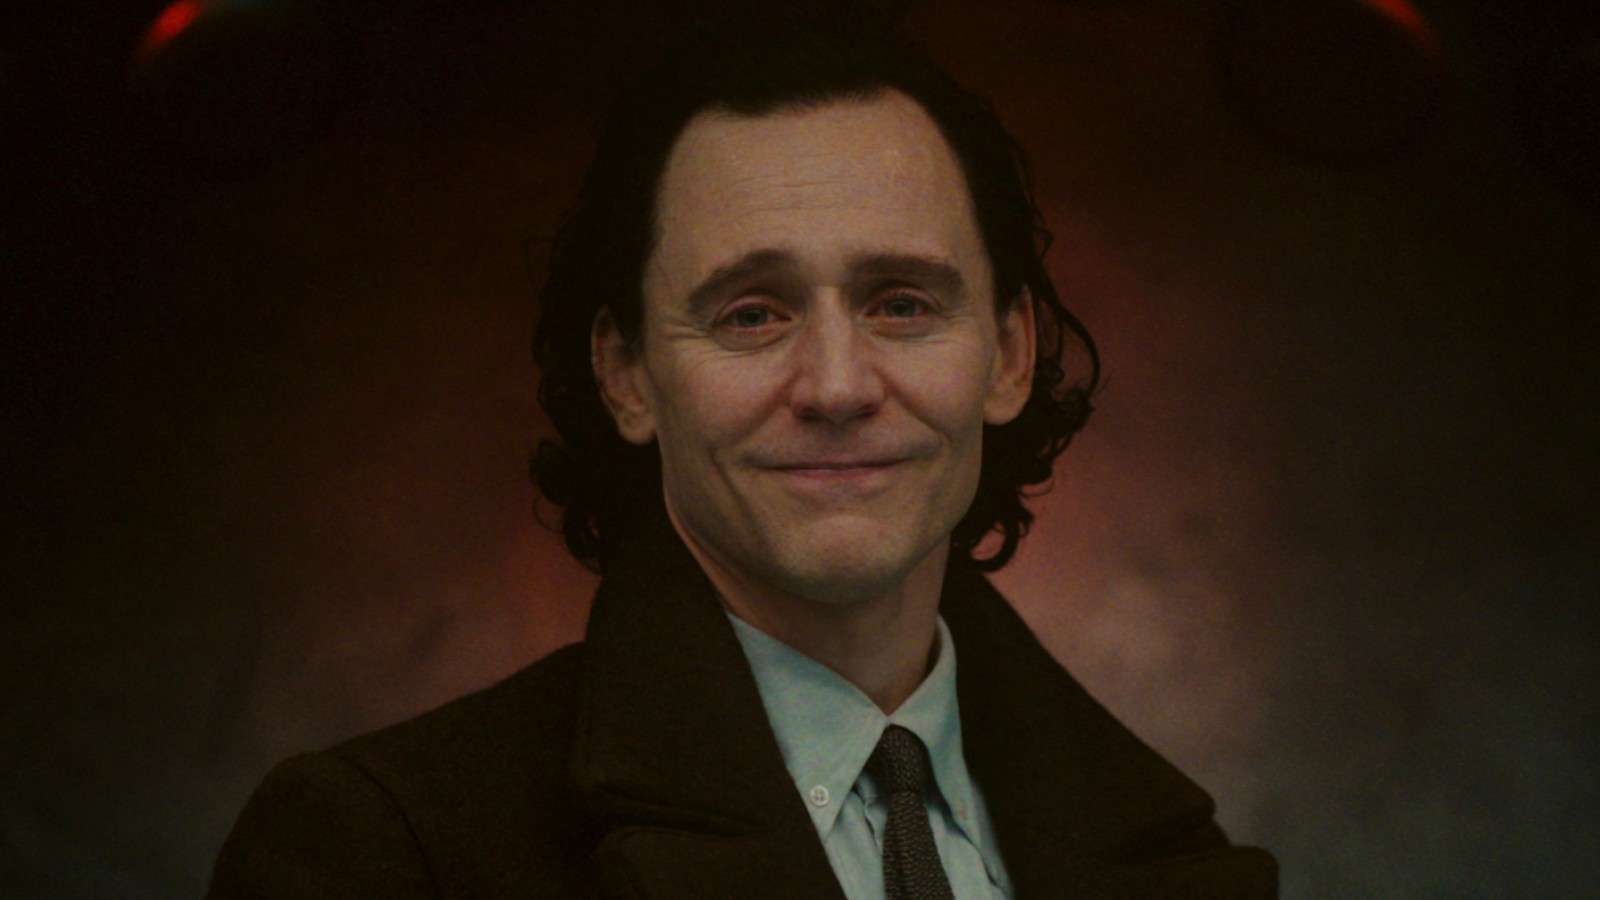 Loki in Season 2